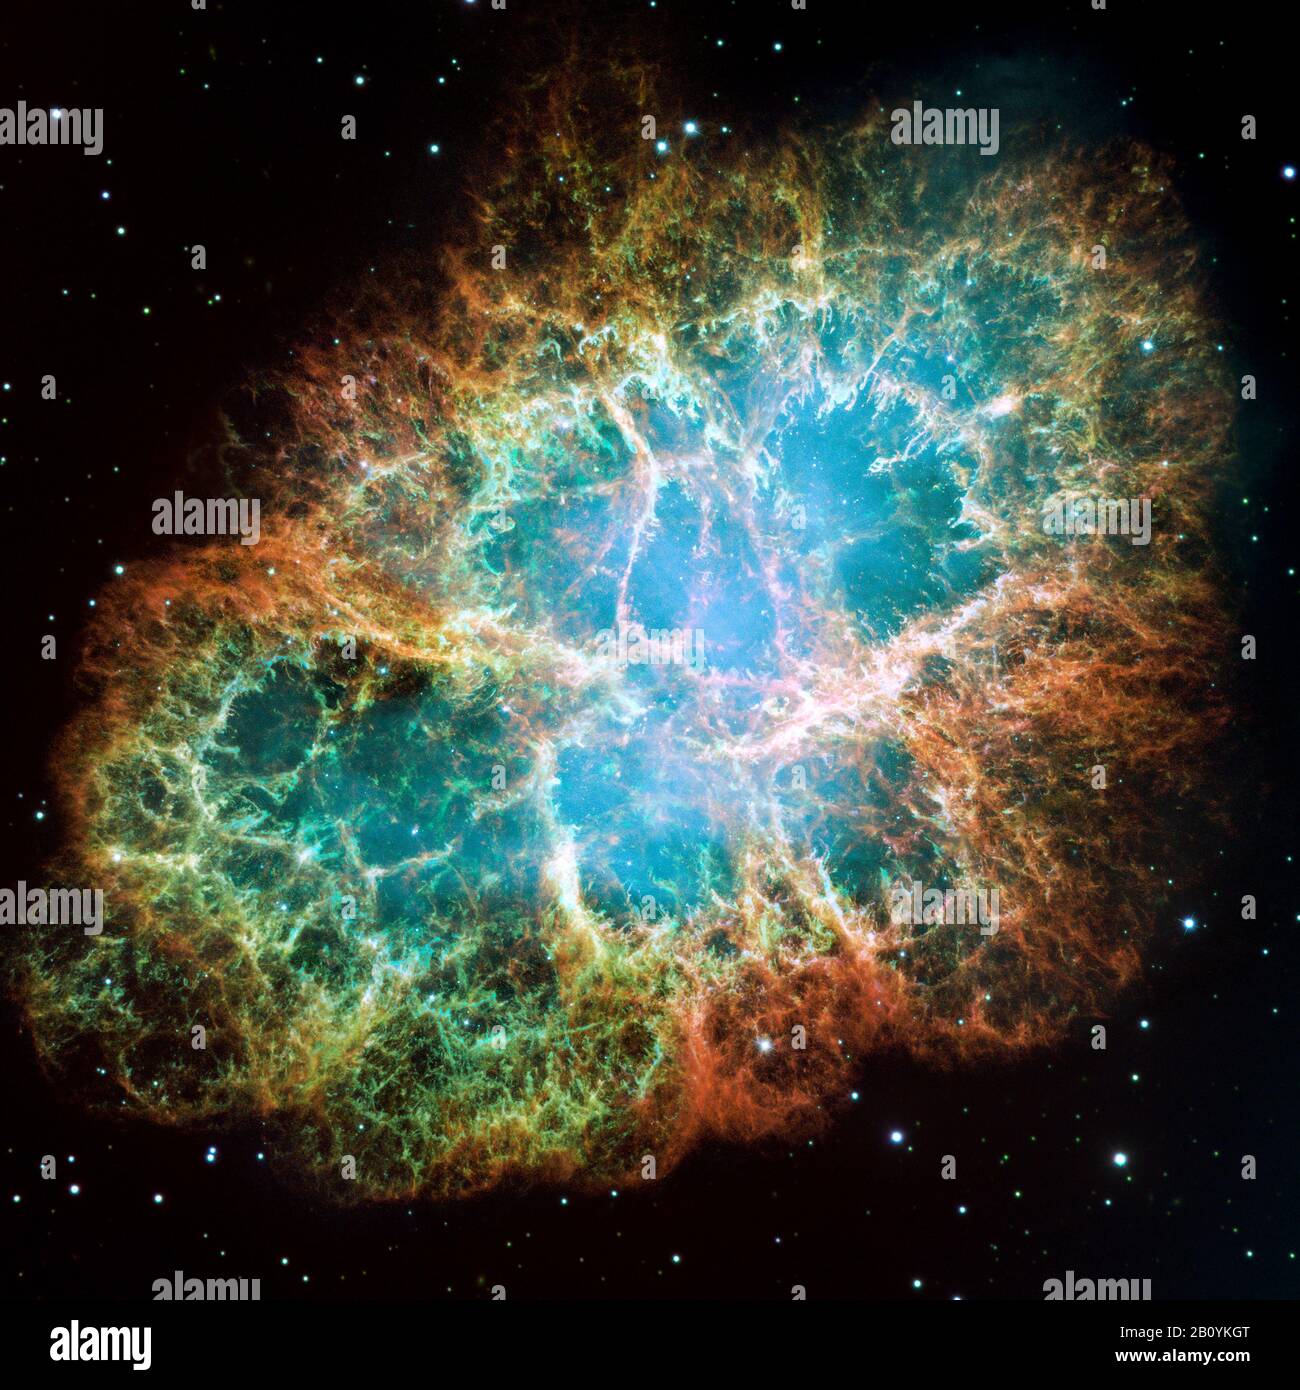 La nébuleuse de crabe est un vestige de supernova dans la constellation du Taureau. 6 523 lumières à l'écart de la terre, l'étoile centrale a explosé en 1054 AD Banque D'Images